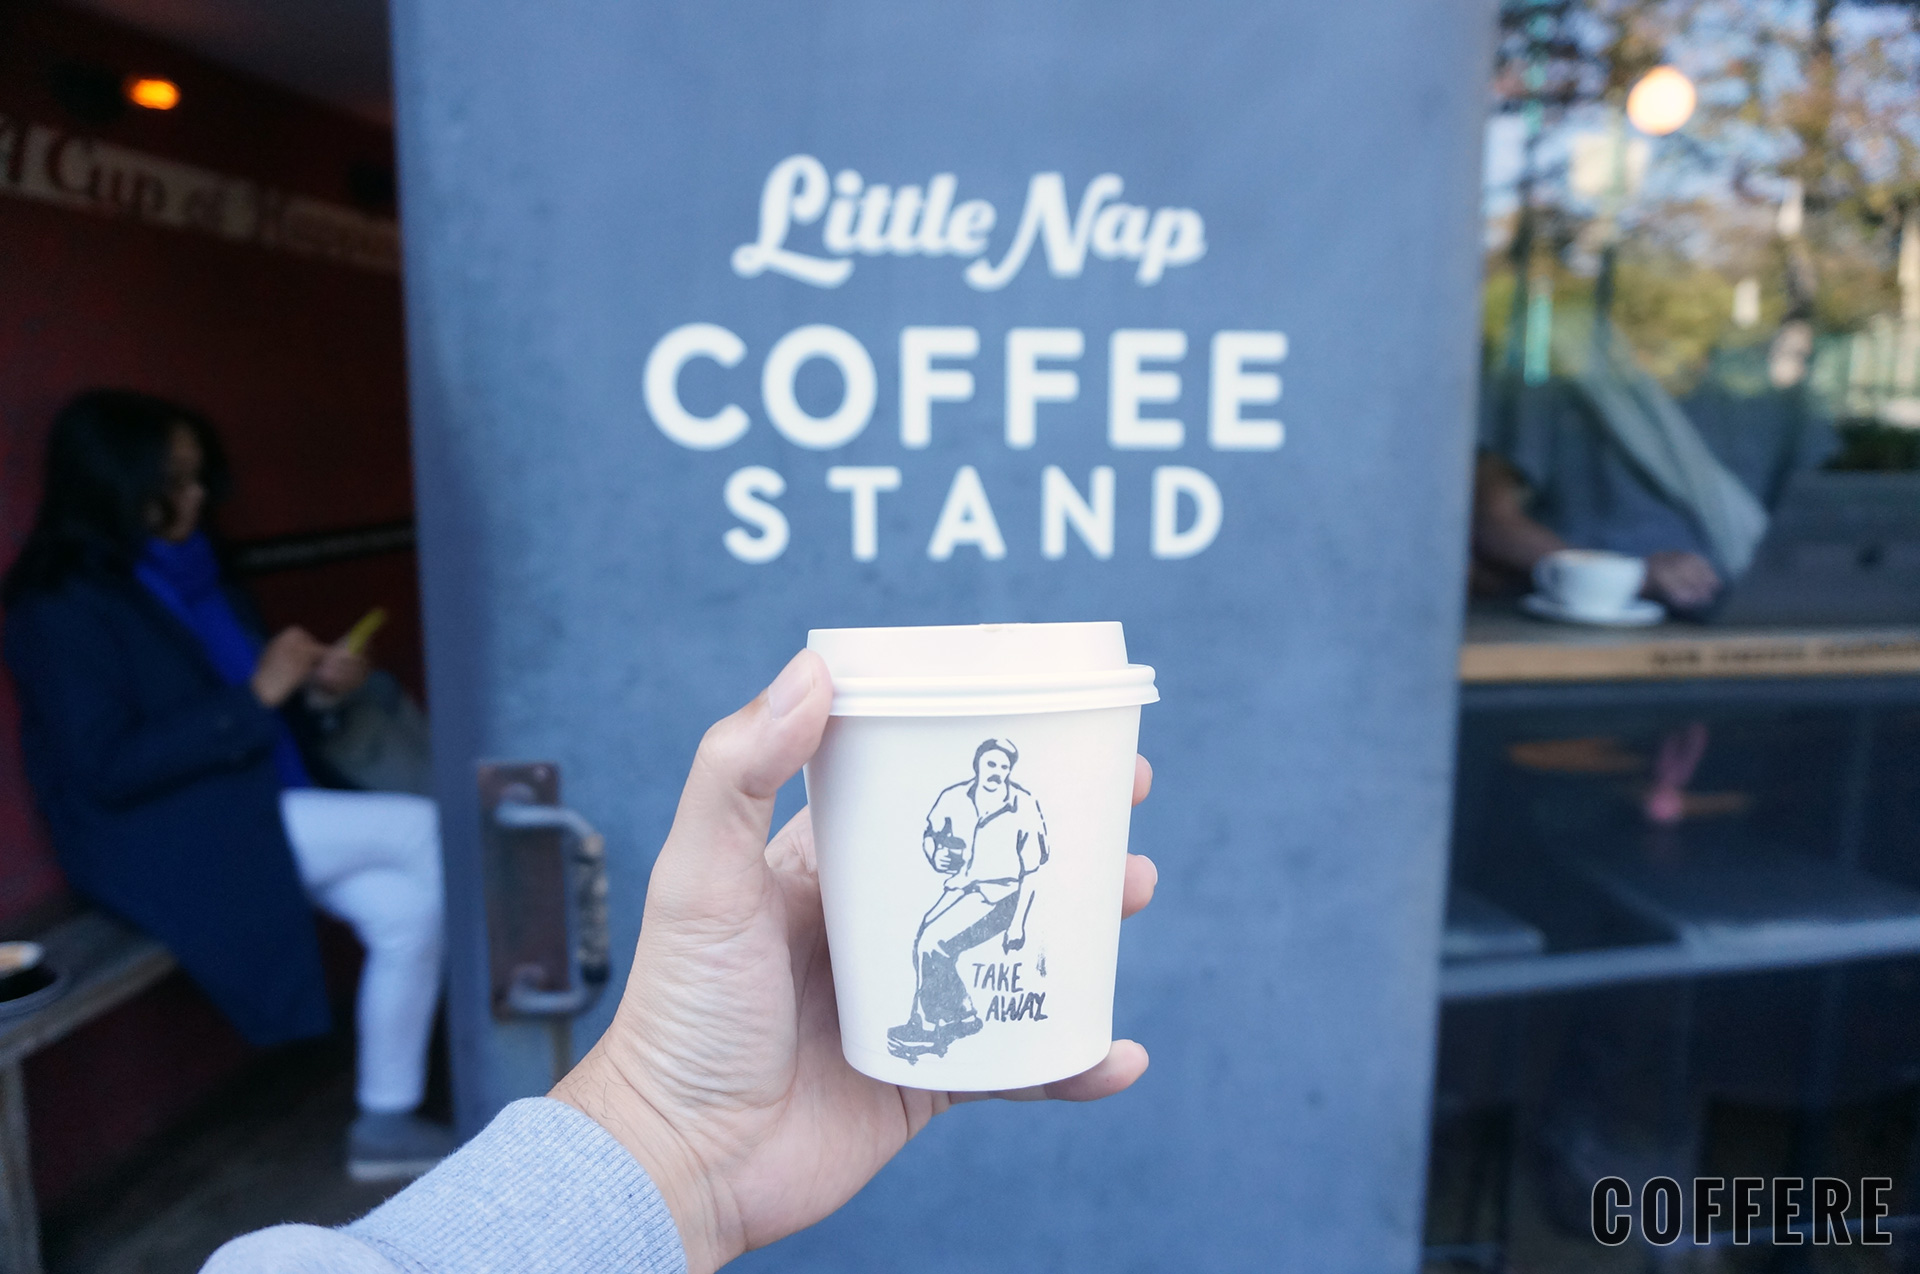 Little Nap COFFEE STANDのロゴとラテのテイクアウトカップ